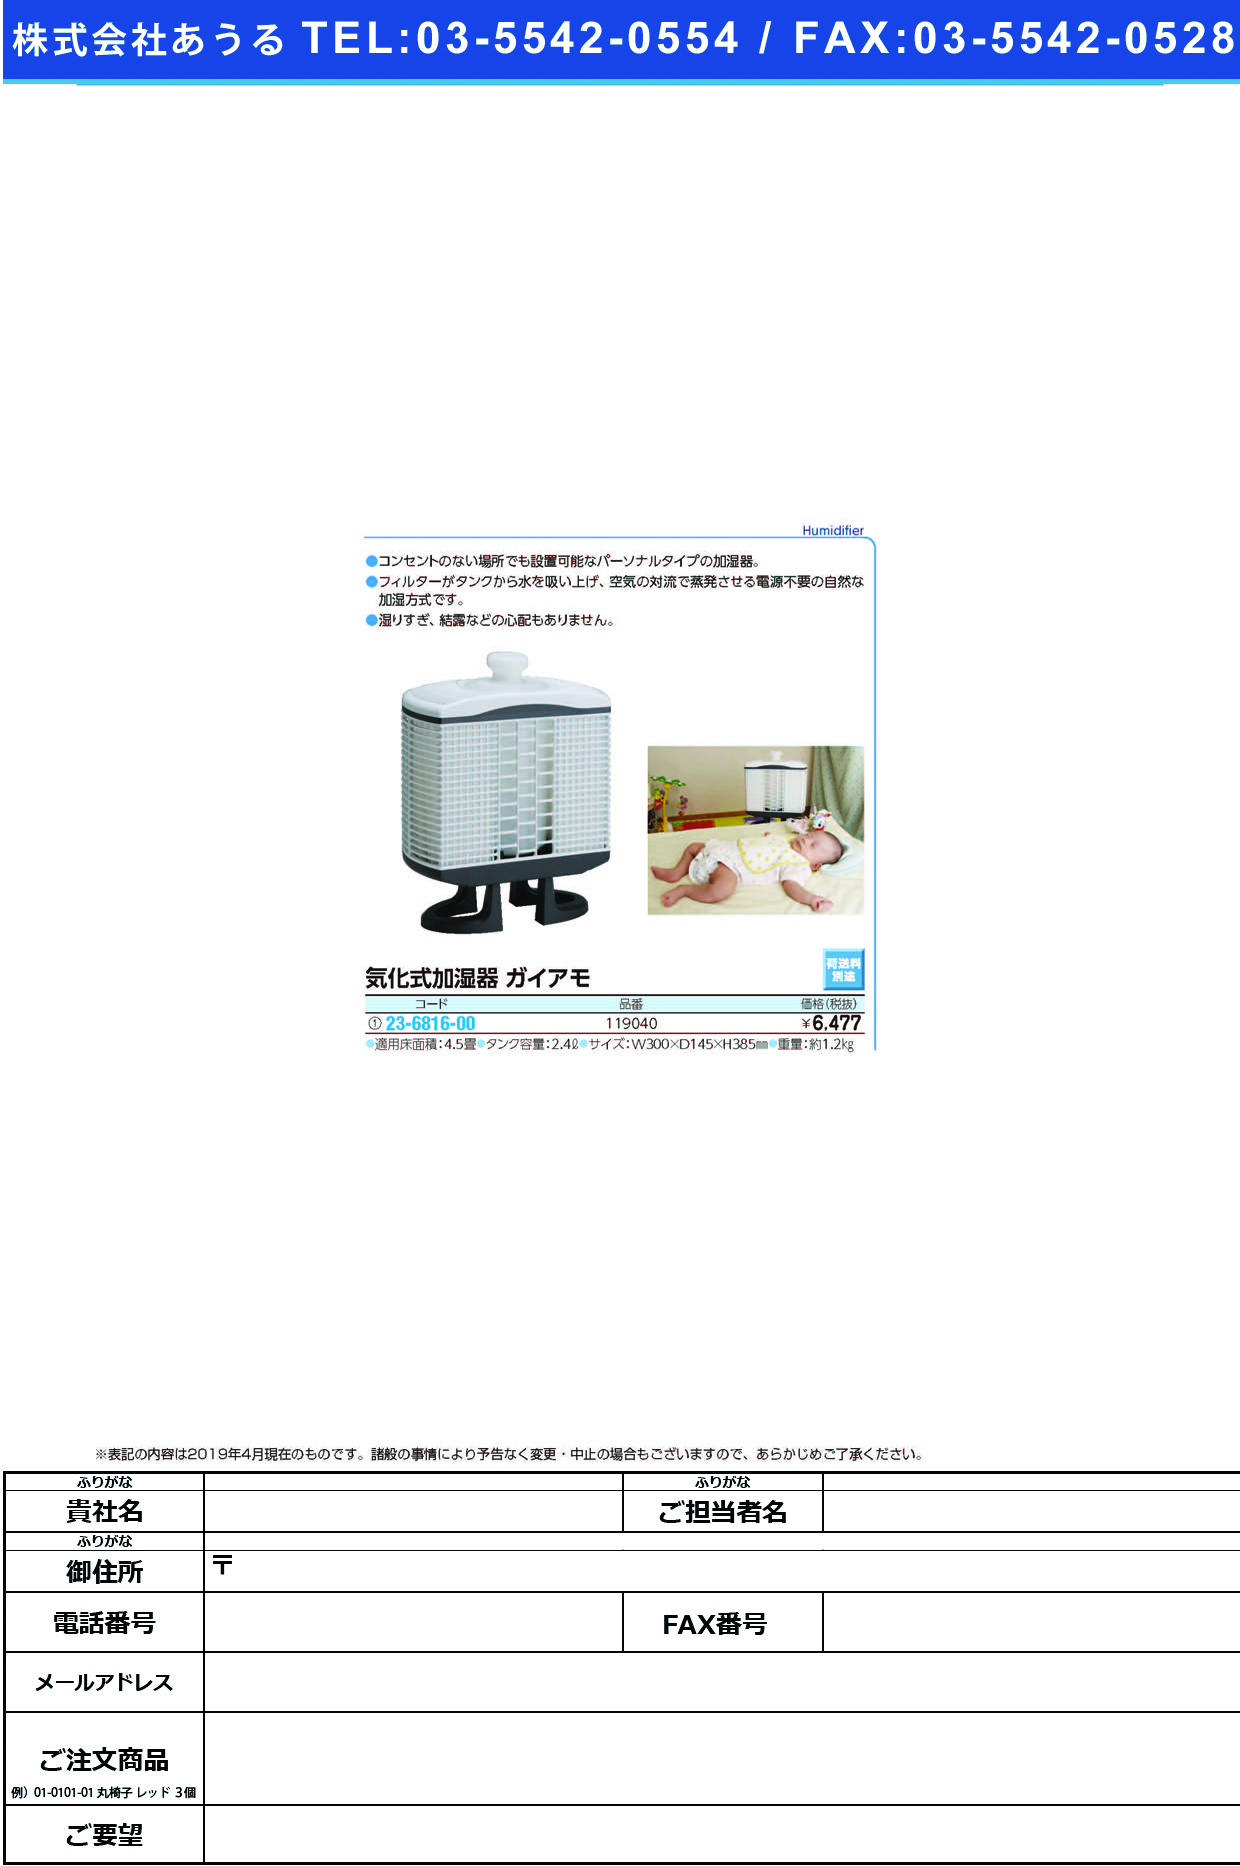 (23-6816-00)加湿器ガイアモパーソナル  ｶｼﾂｷｶﾞｲｱﾓﾊﾟｰｿﾅﾙ【1台単位】【2019年カタログ商品】